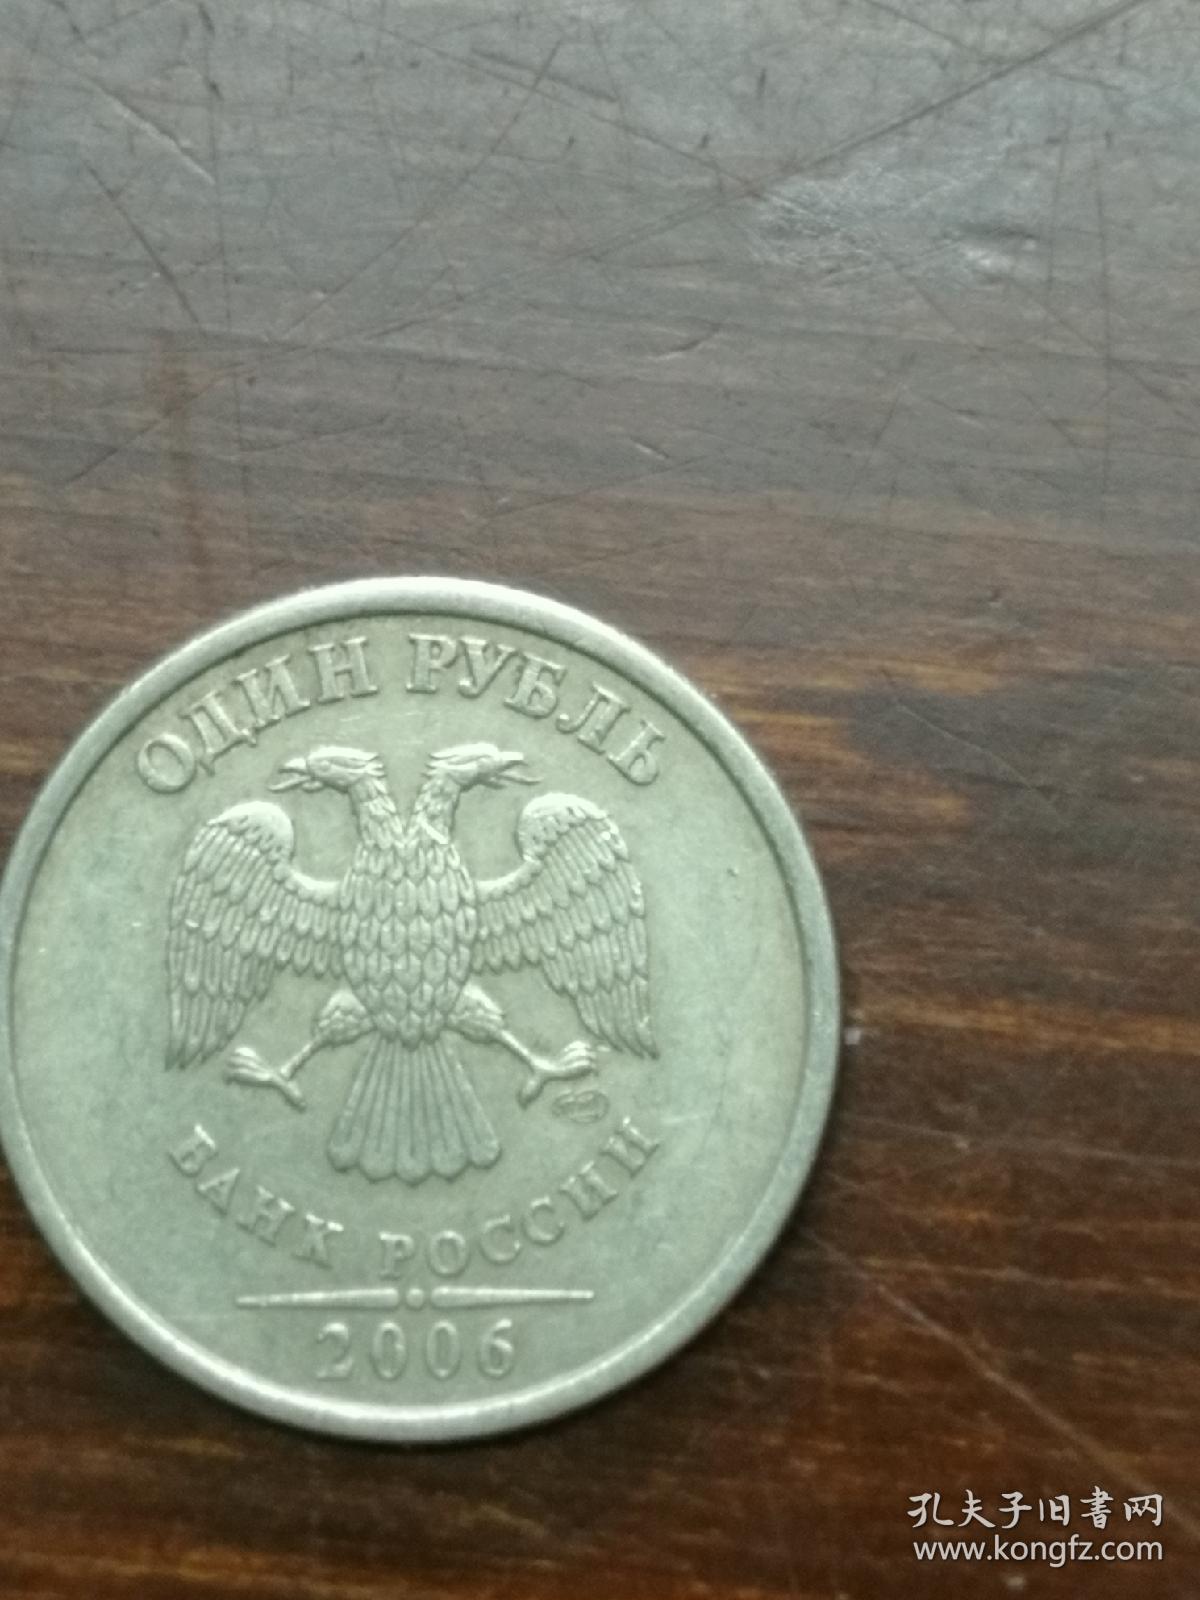 俄罗斯 2006年1卢布 硬币 双头鹰图